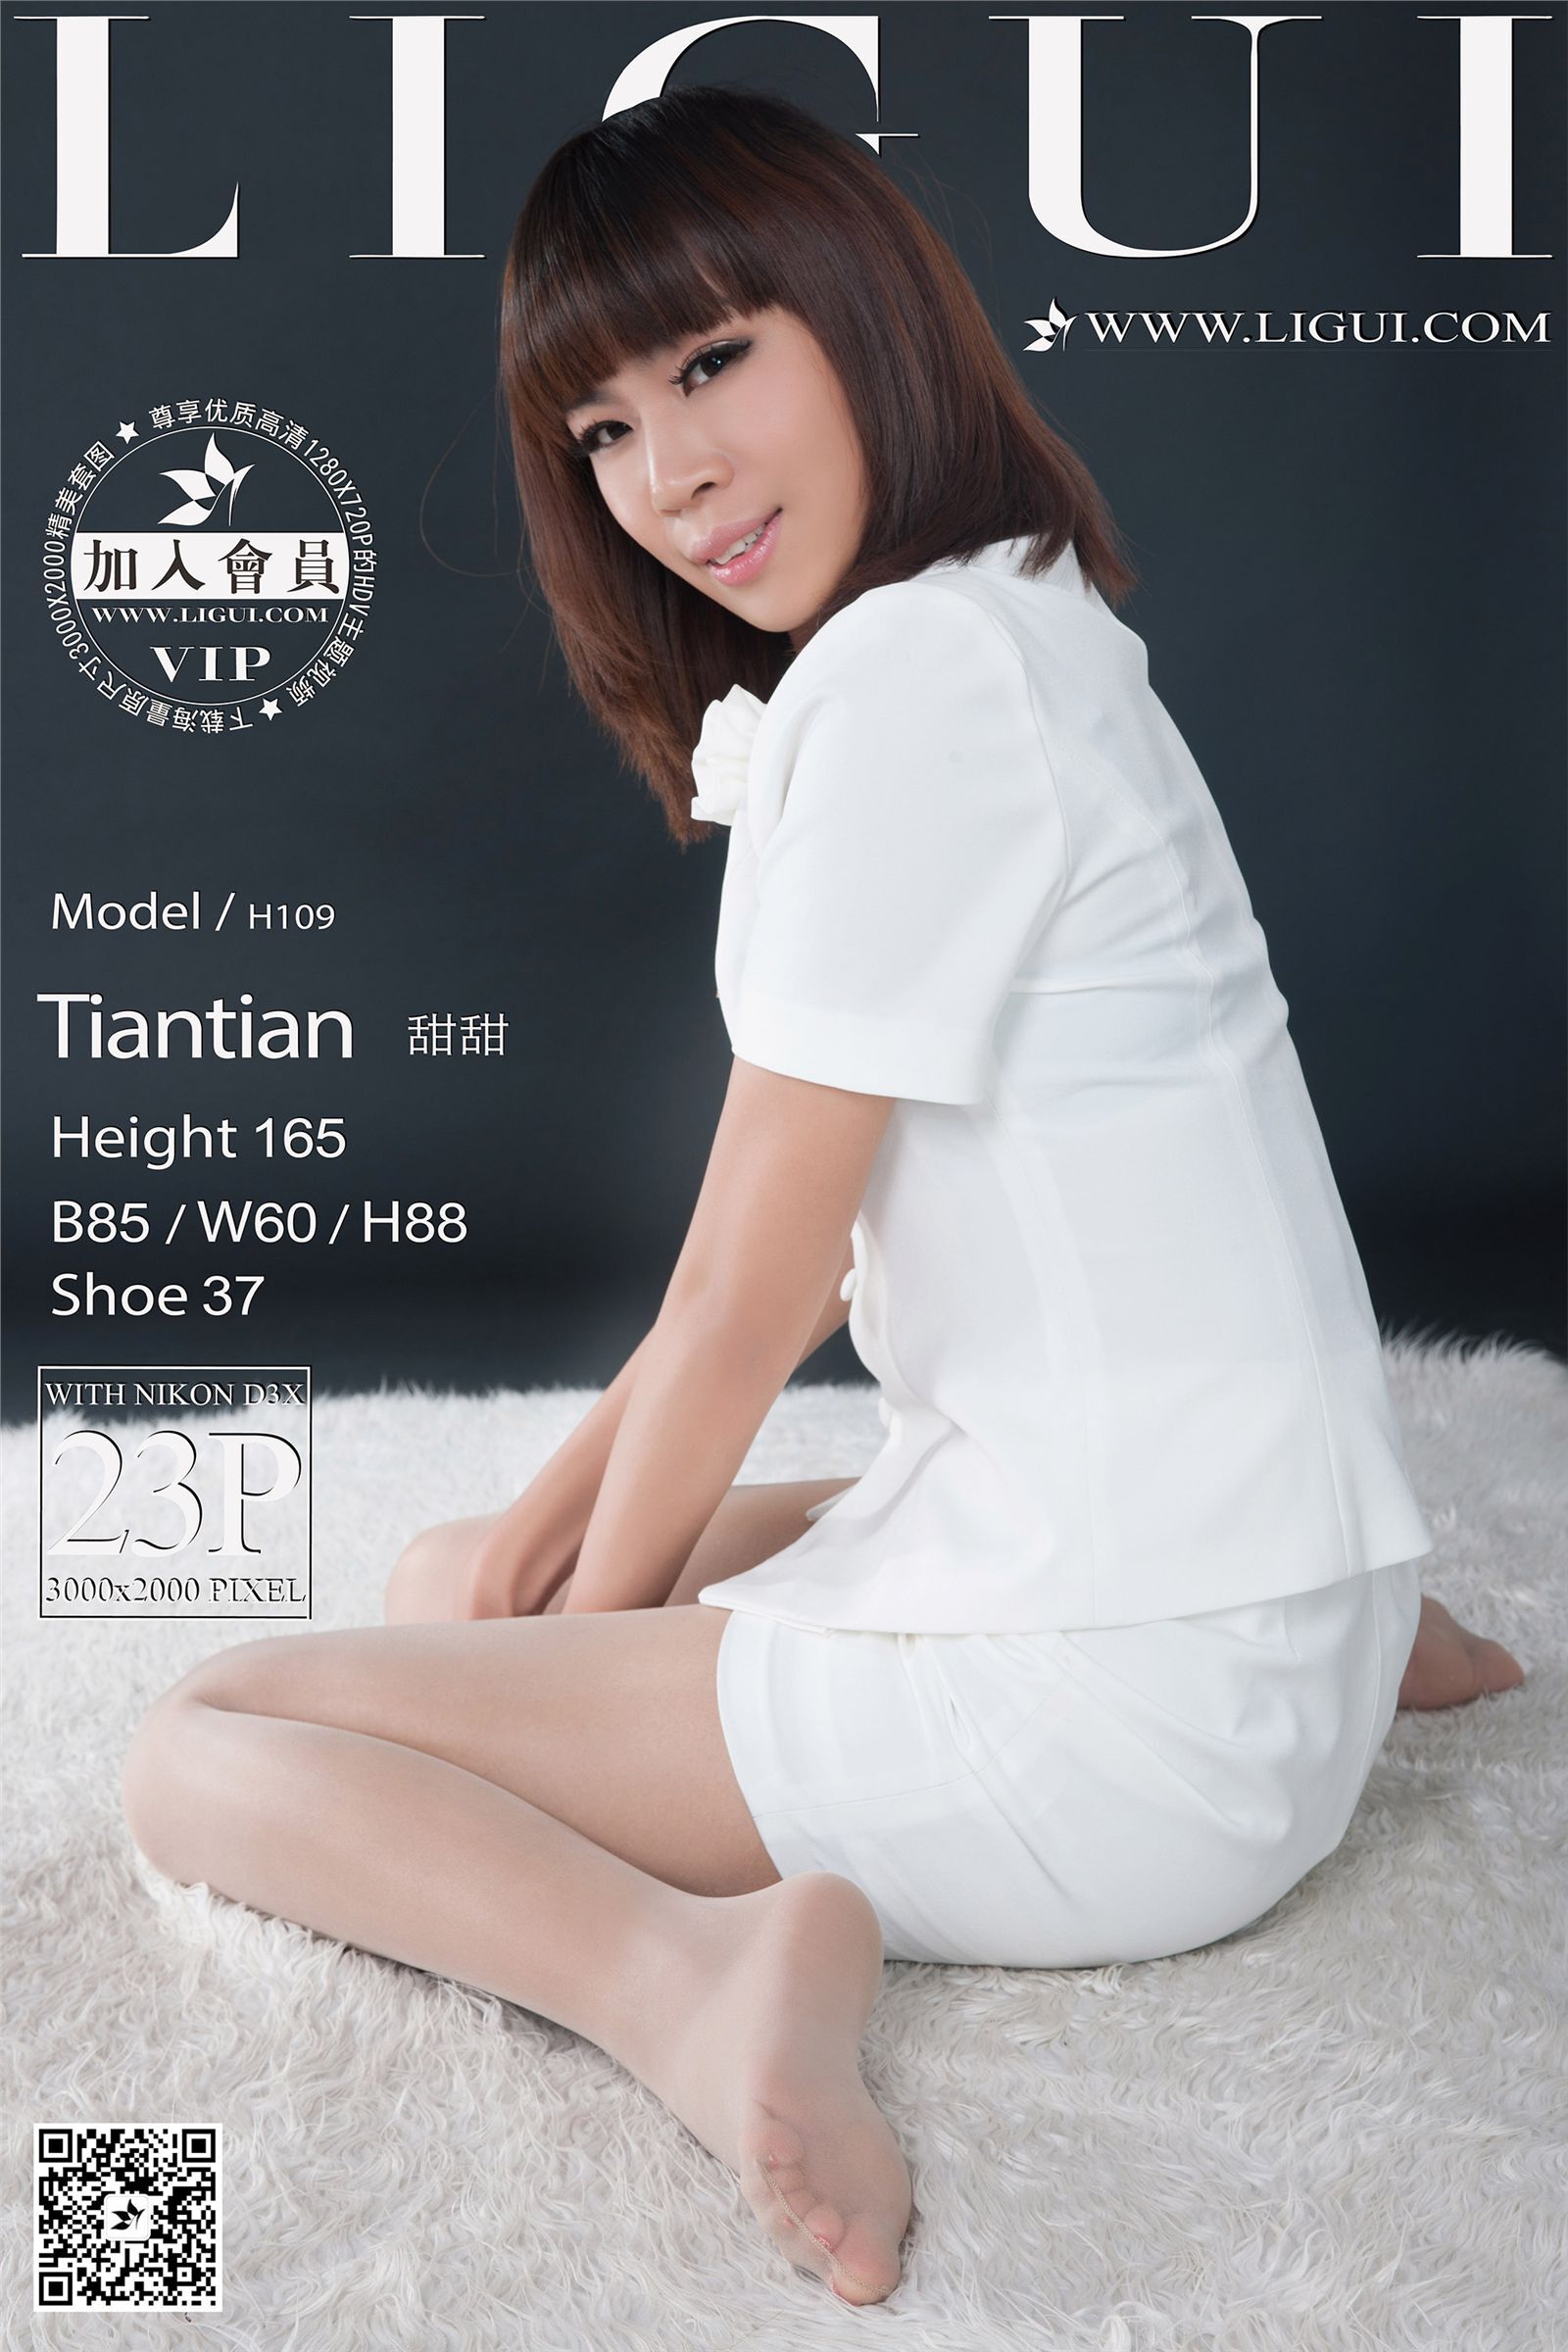 Ligui 2016.02.11 network beauty model Tiantian